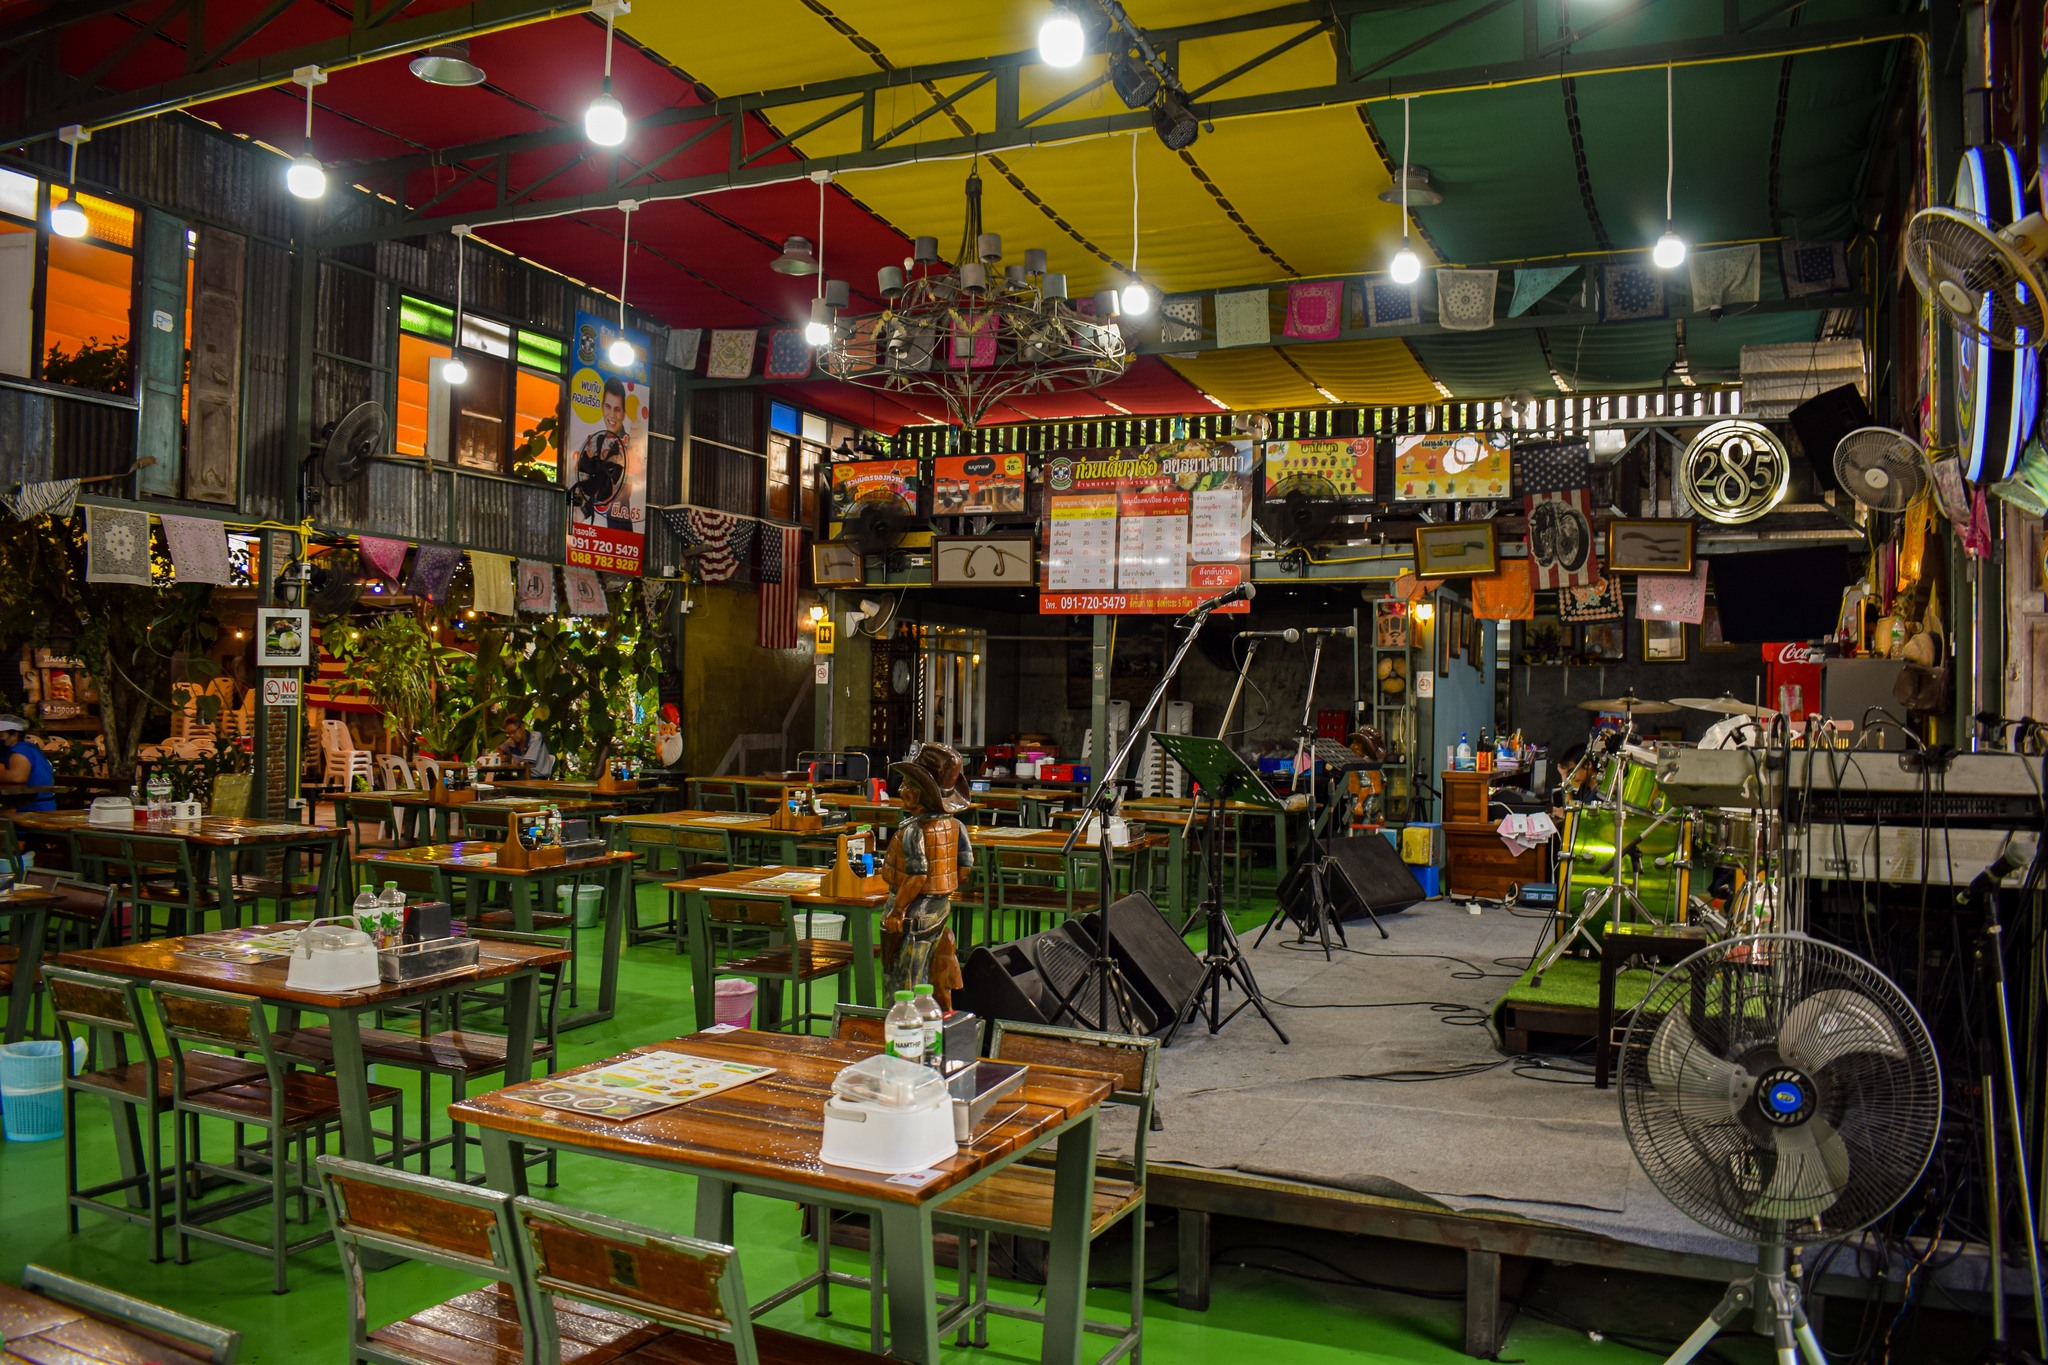 Pak Pouak Restaurant (พรรคพวก อาหารใต้ & ซีฟู้ด สวนสยาม 18) : Bangkok (กรุงเทพมหานคร)